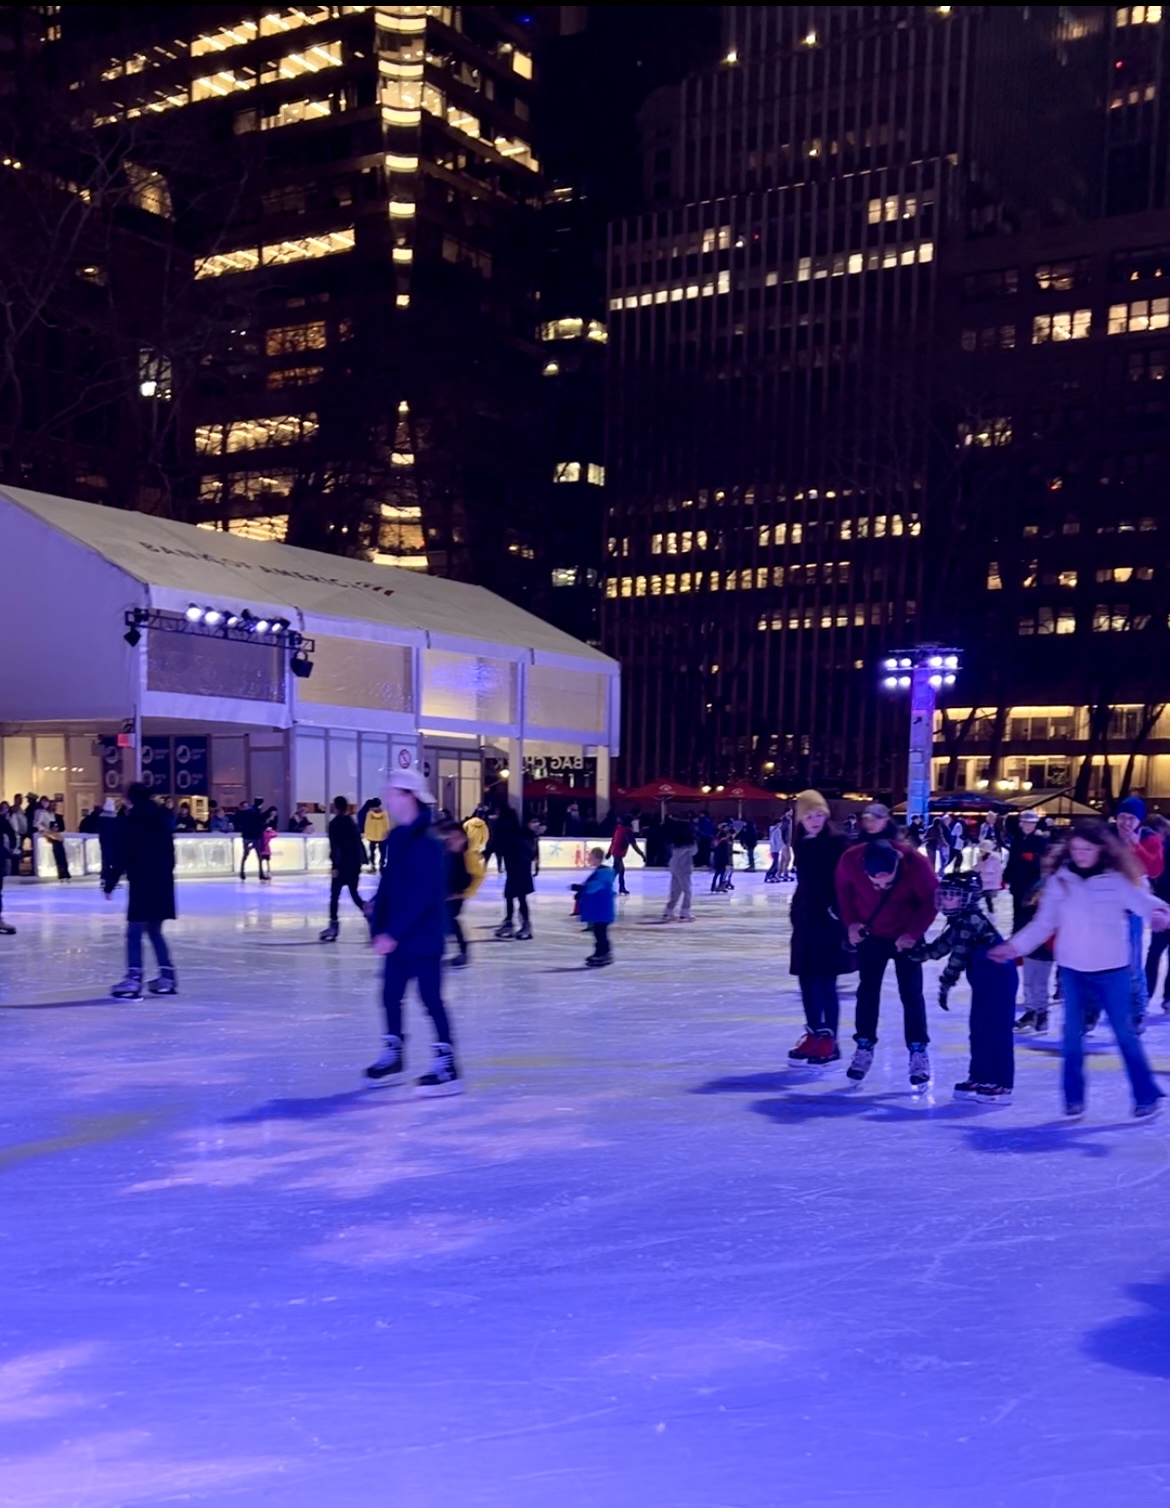 Ice Skating at Bryant Park, NYC